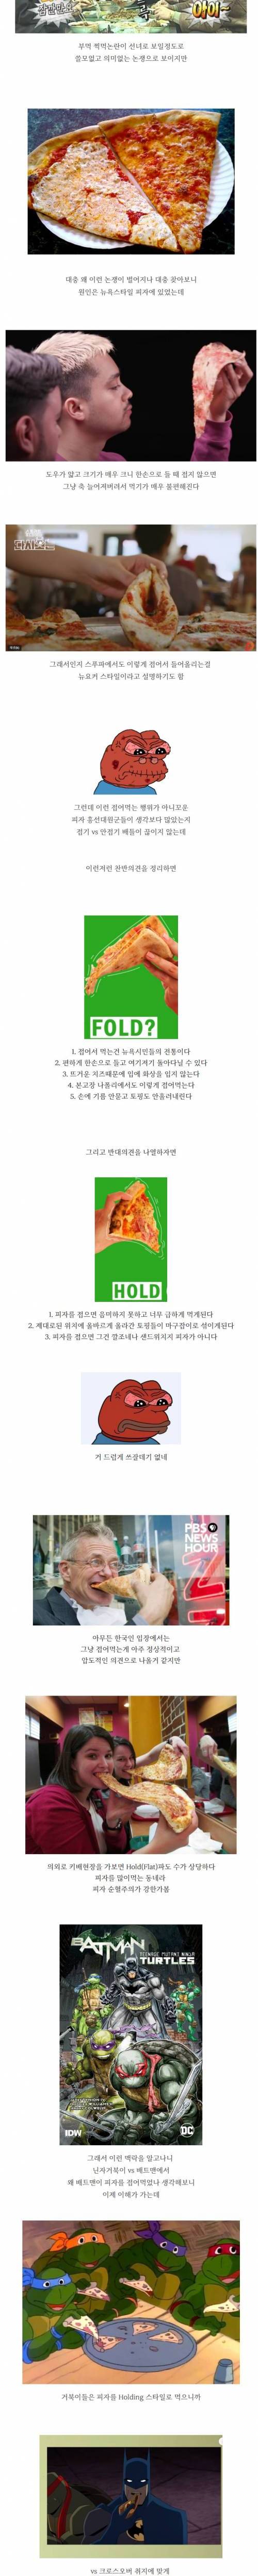 [스압] Hold or Fold ? 더럽게 쓸데없는 미국 피자 논쟁.jpg